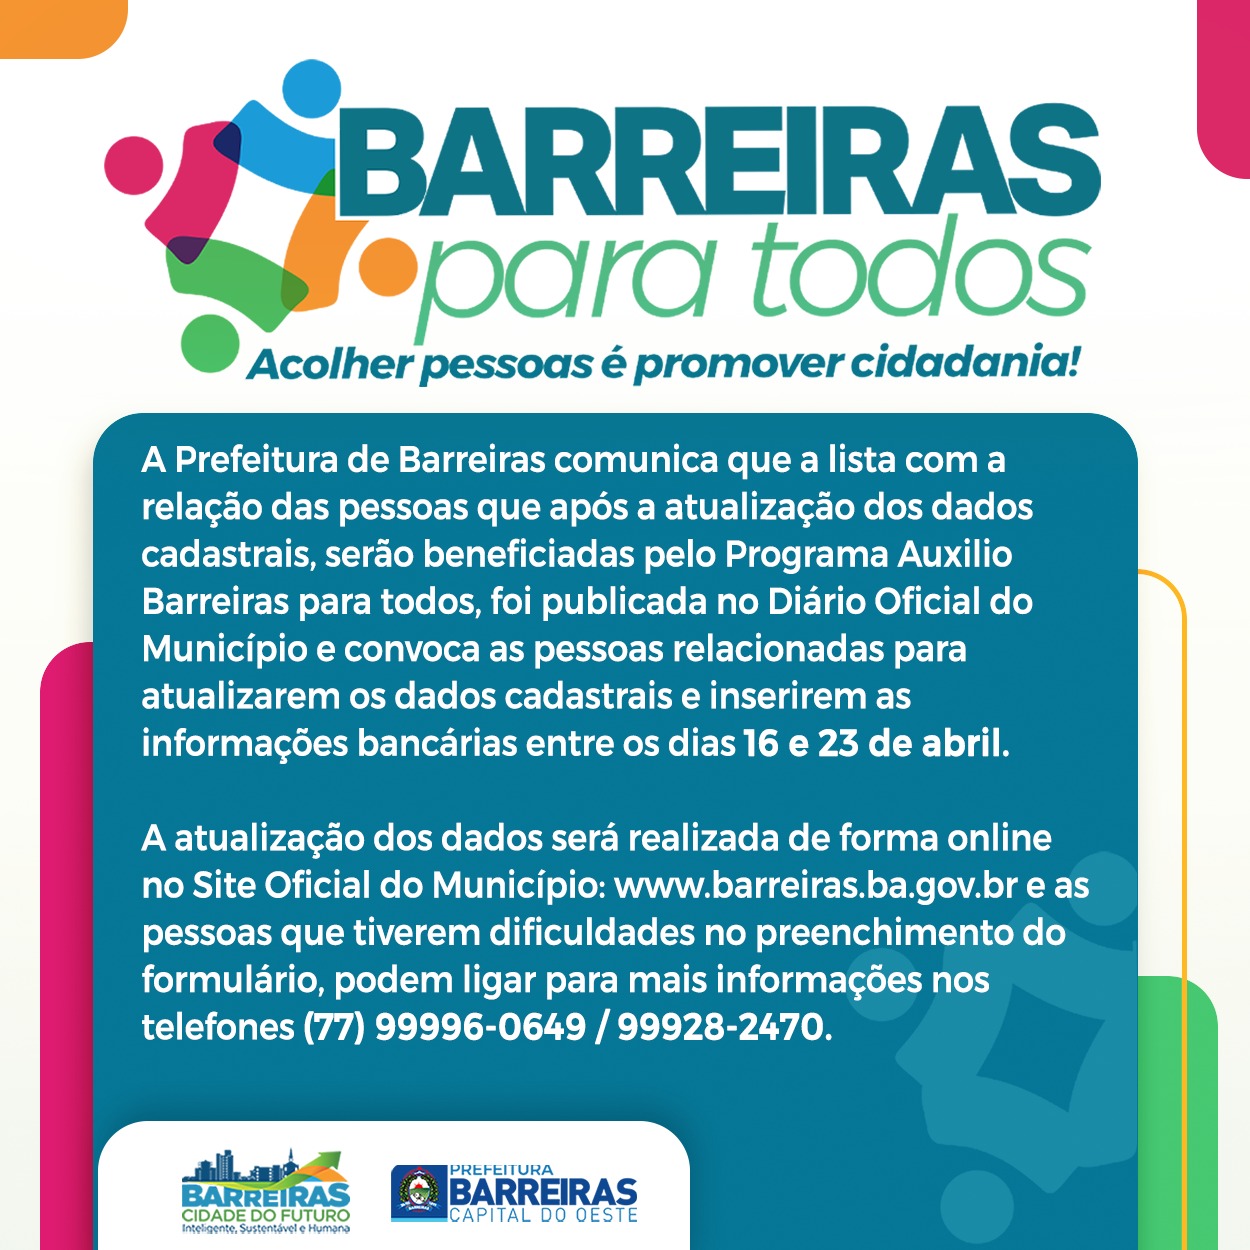 Prefeitura de Barreiras abre atualização cadastral para pessoas pré-selecionadas para serem beneficiadas pelo Programa Auxílio Barreiras para todos  